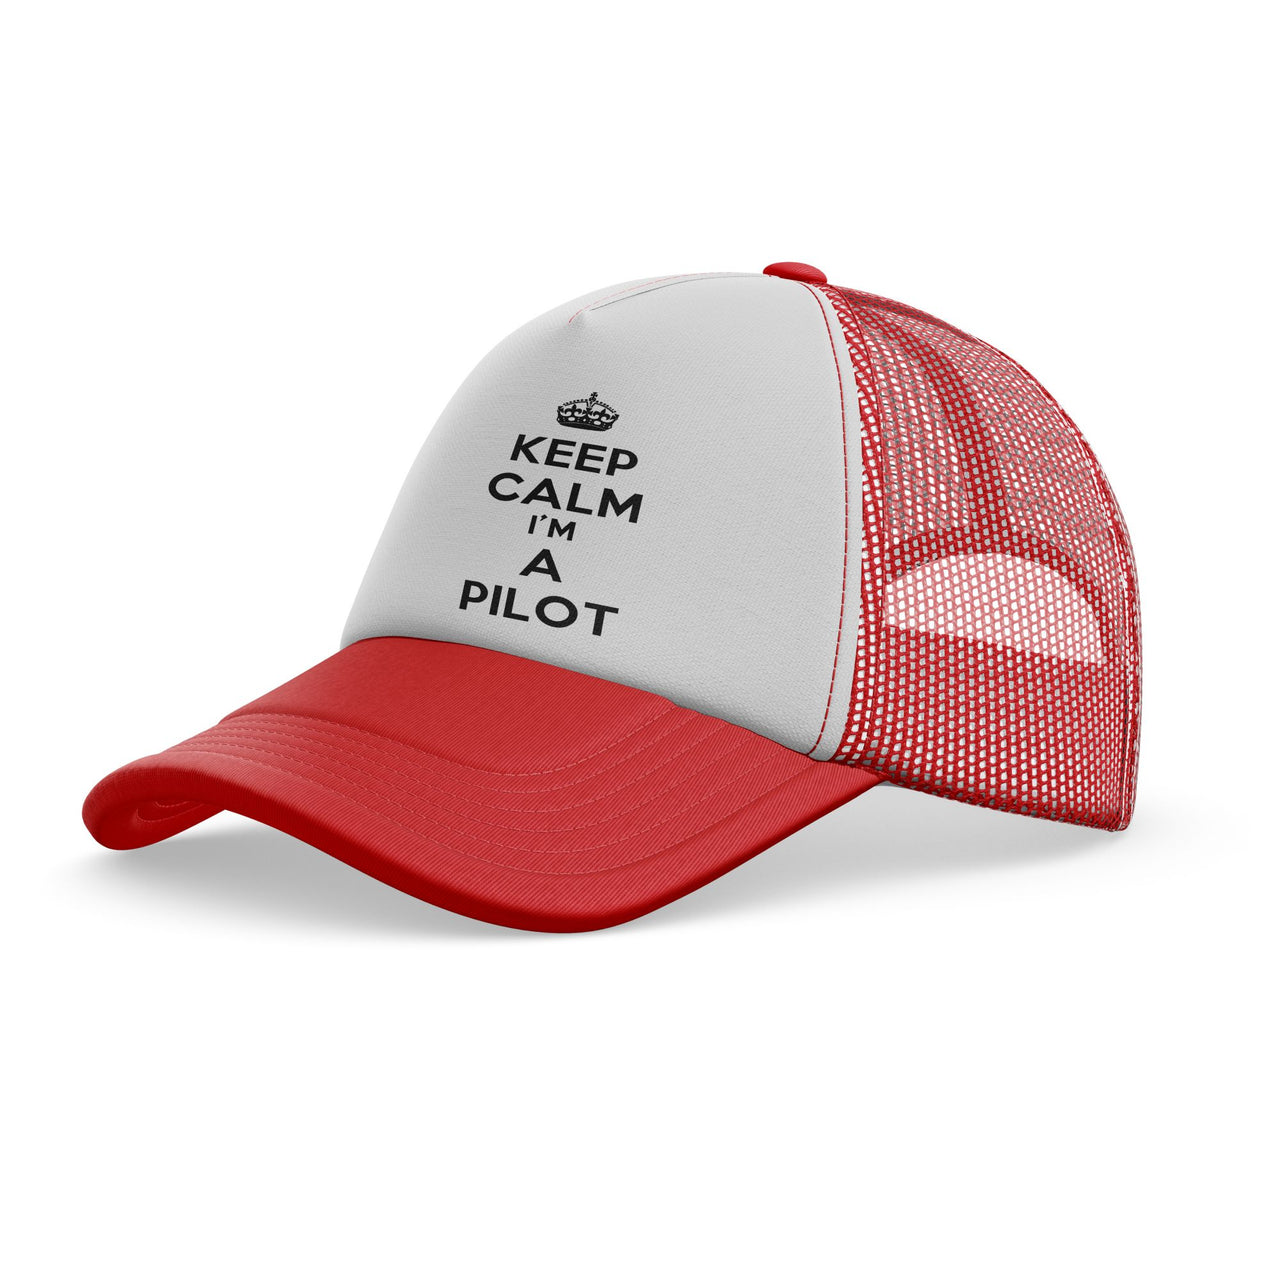 Keep Calm I'm a Pilot Designed Trucker Caps & Hats